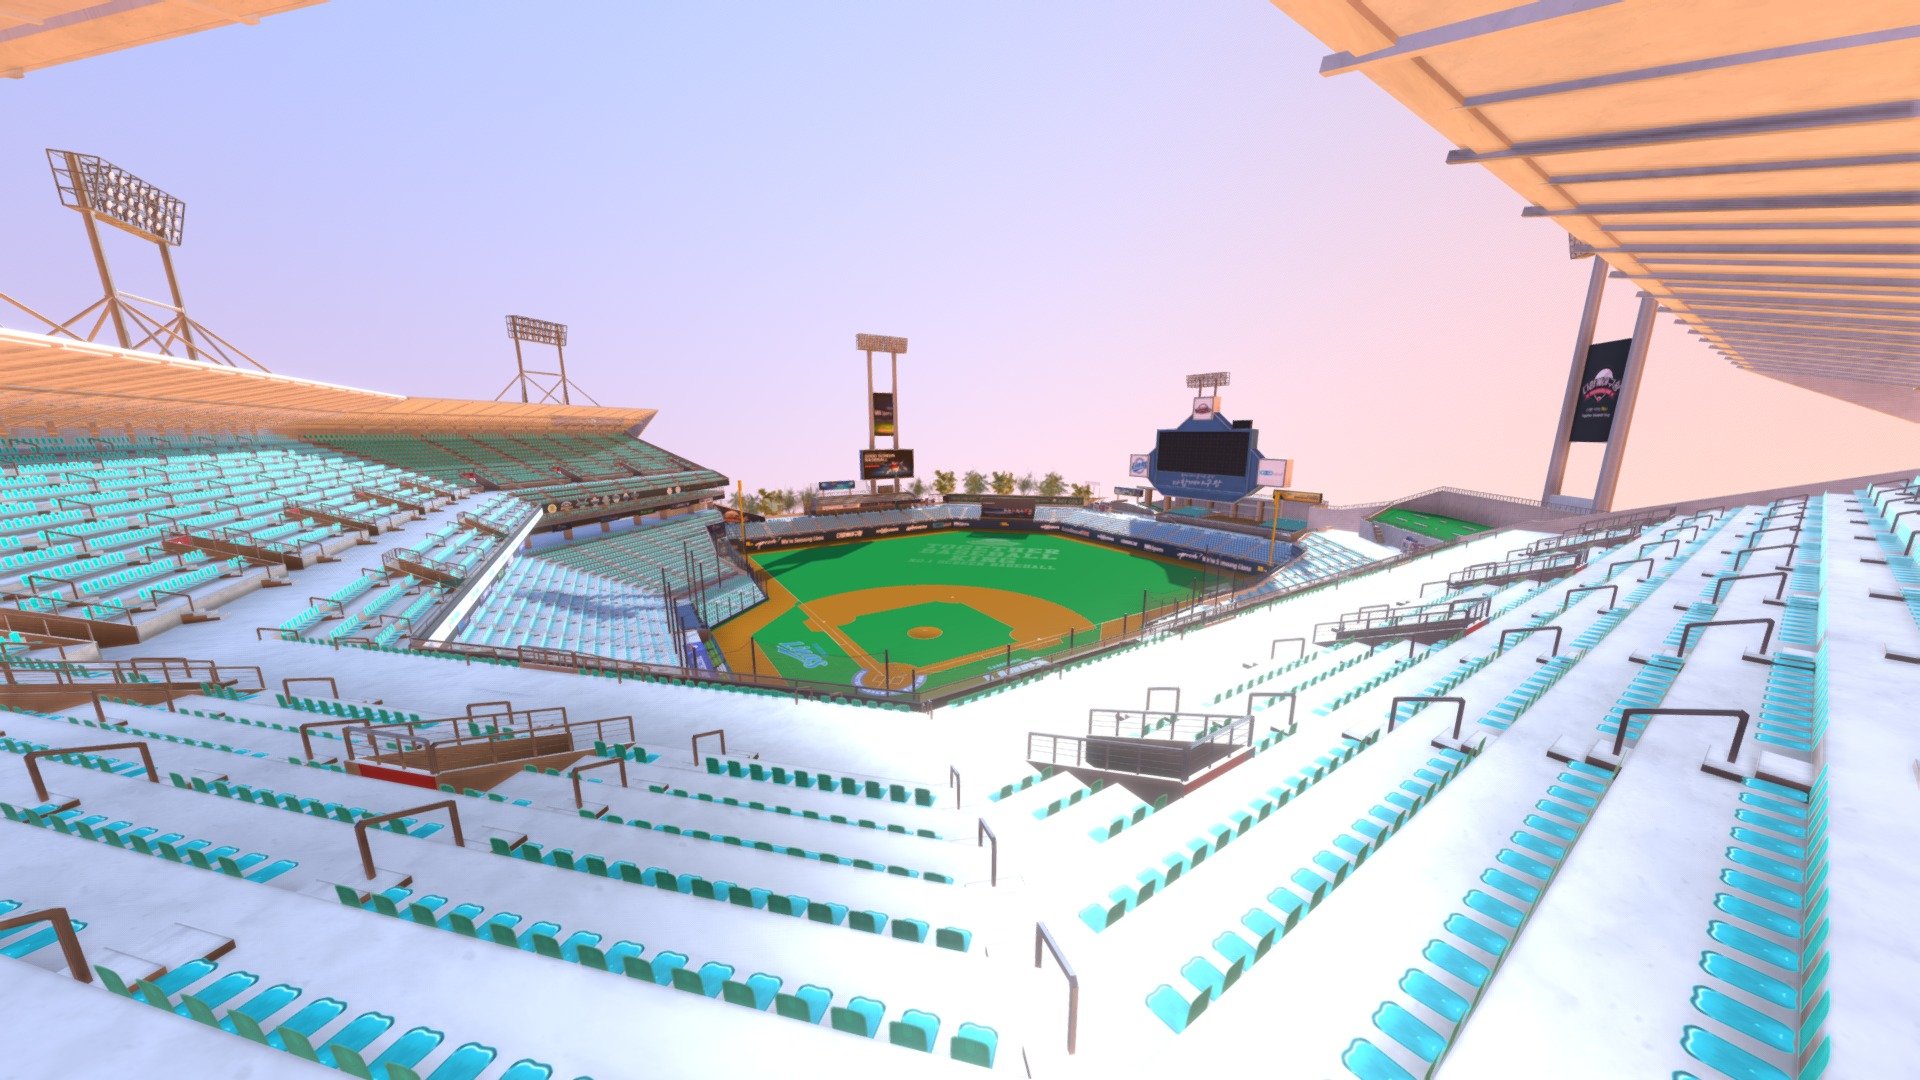 DG_Stadium - 3D model by 4253397 3d model